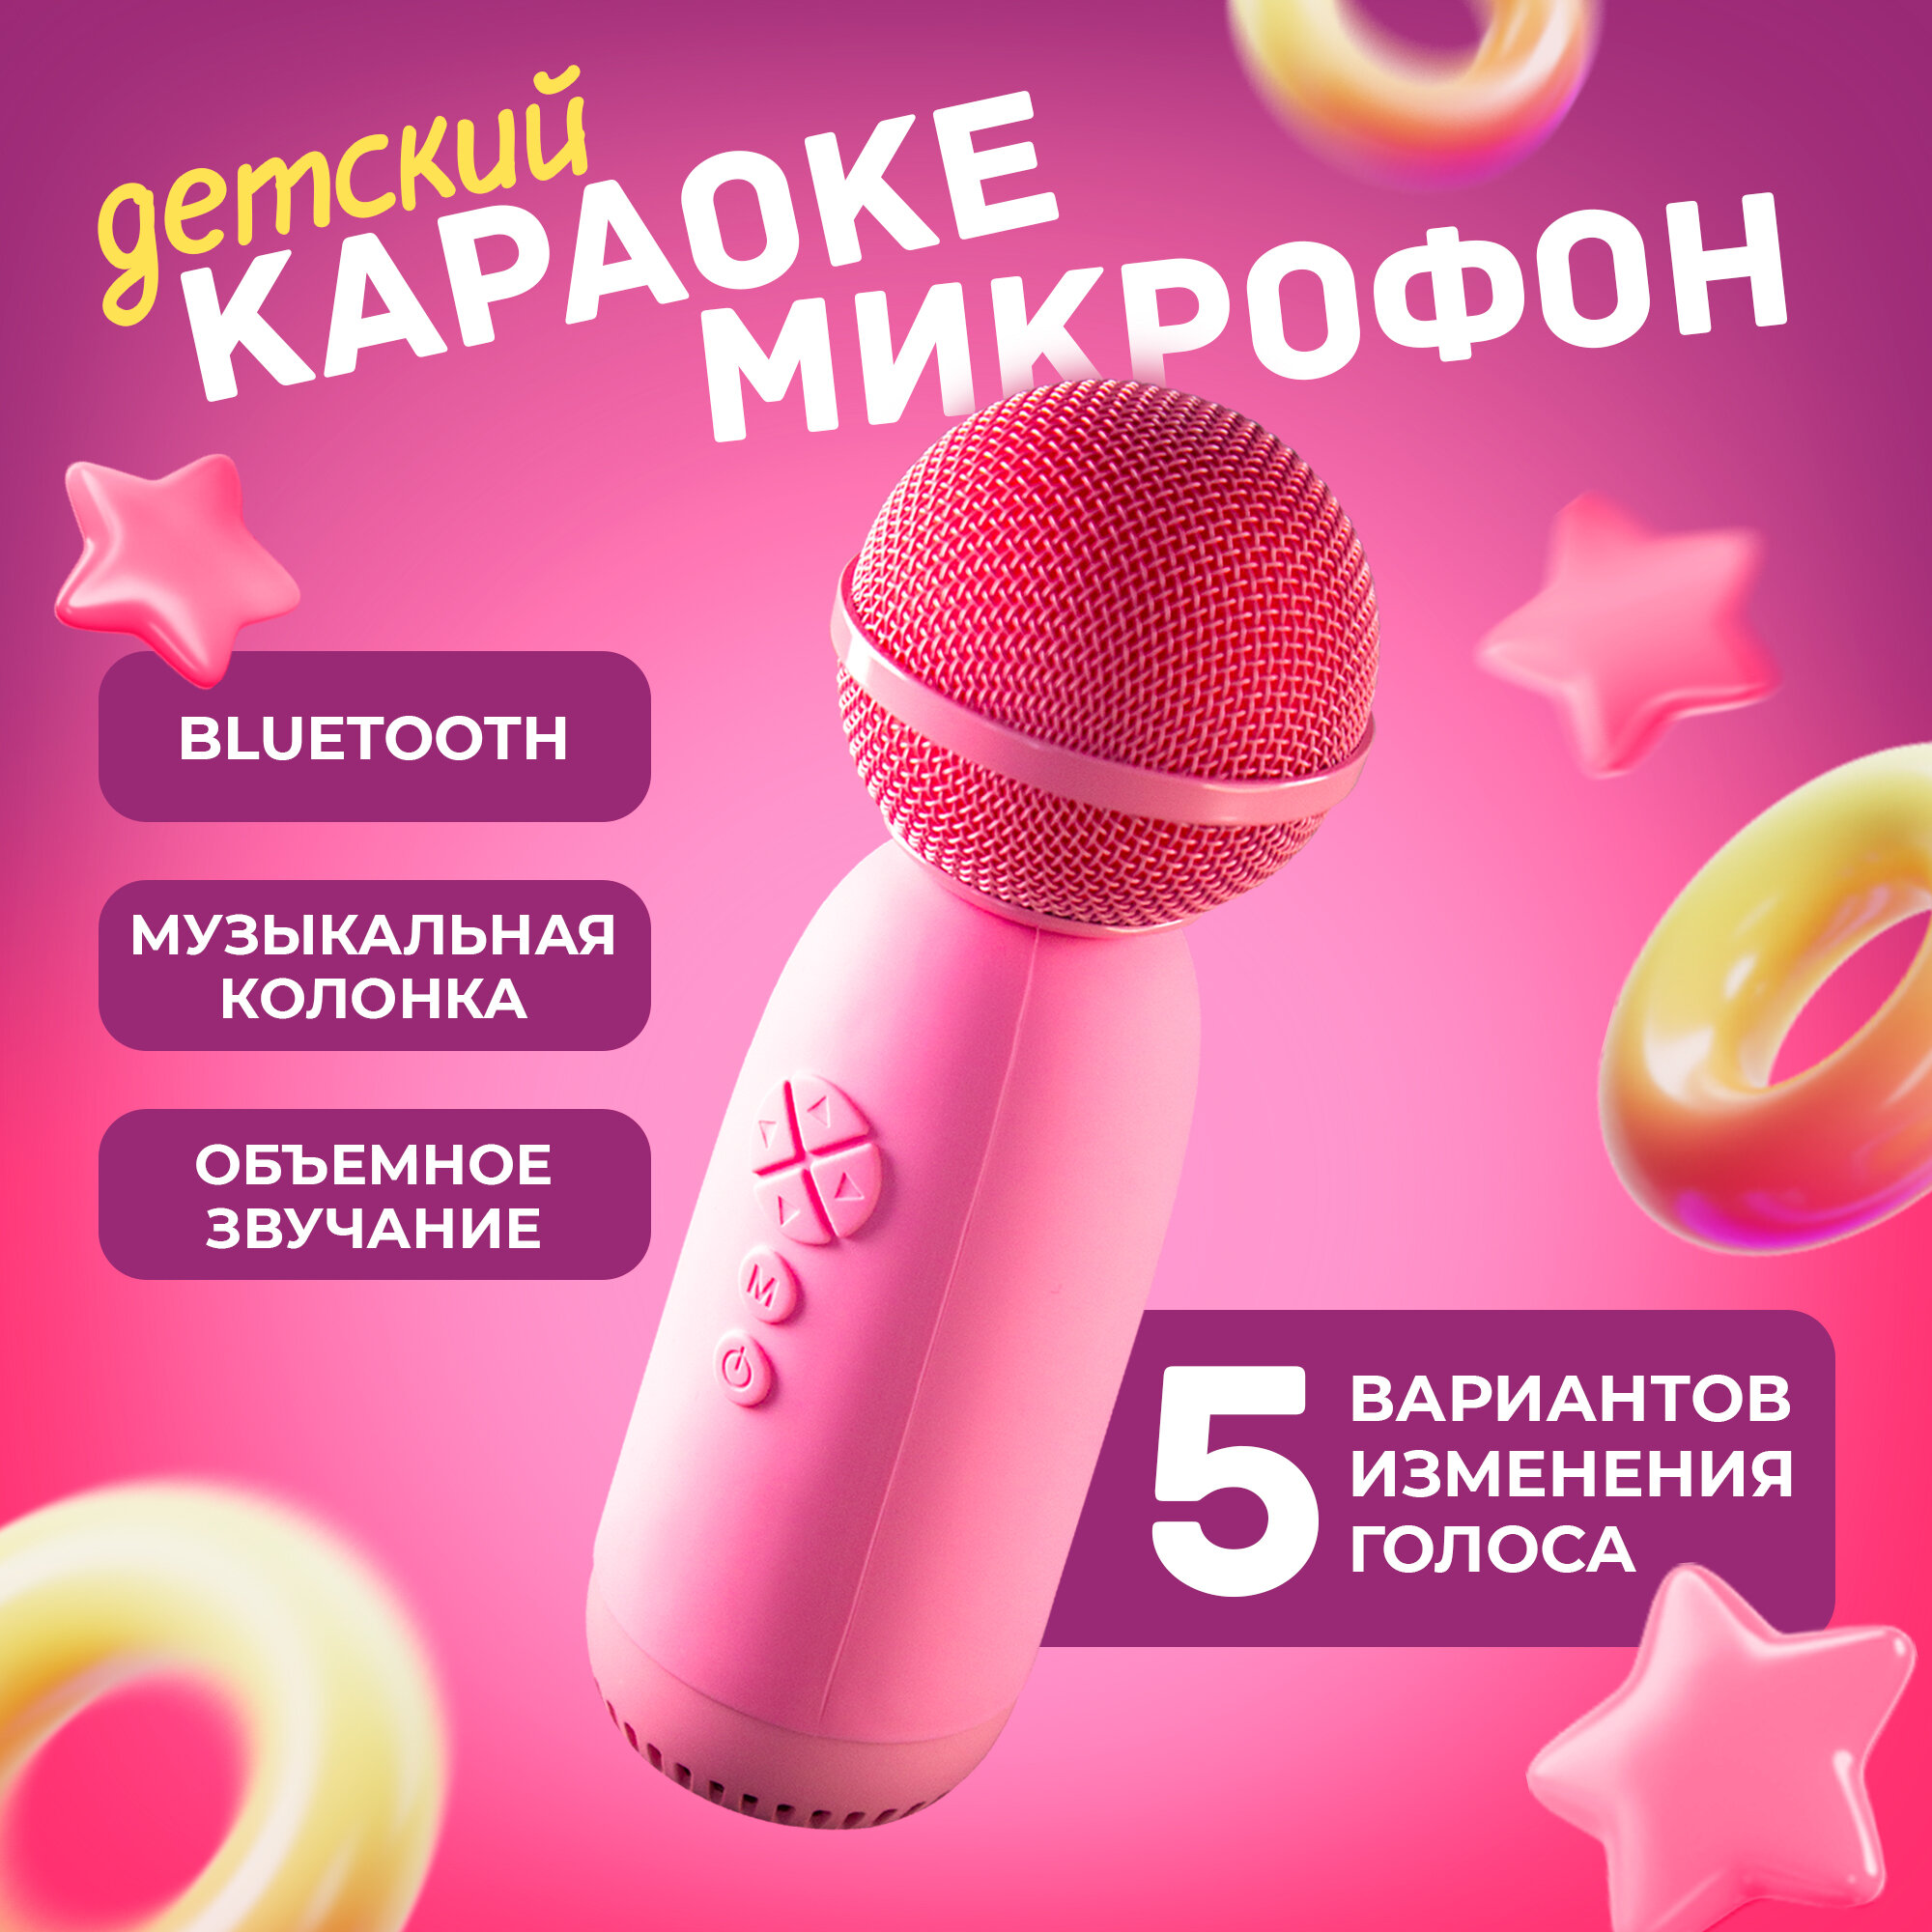 Беспроводной микрофон караоке для телефона, AMFOX, ASP-070, домашнее караоке, детское, студийная колонка для пения, блютуз, розовый